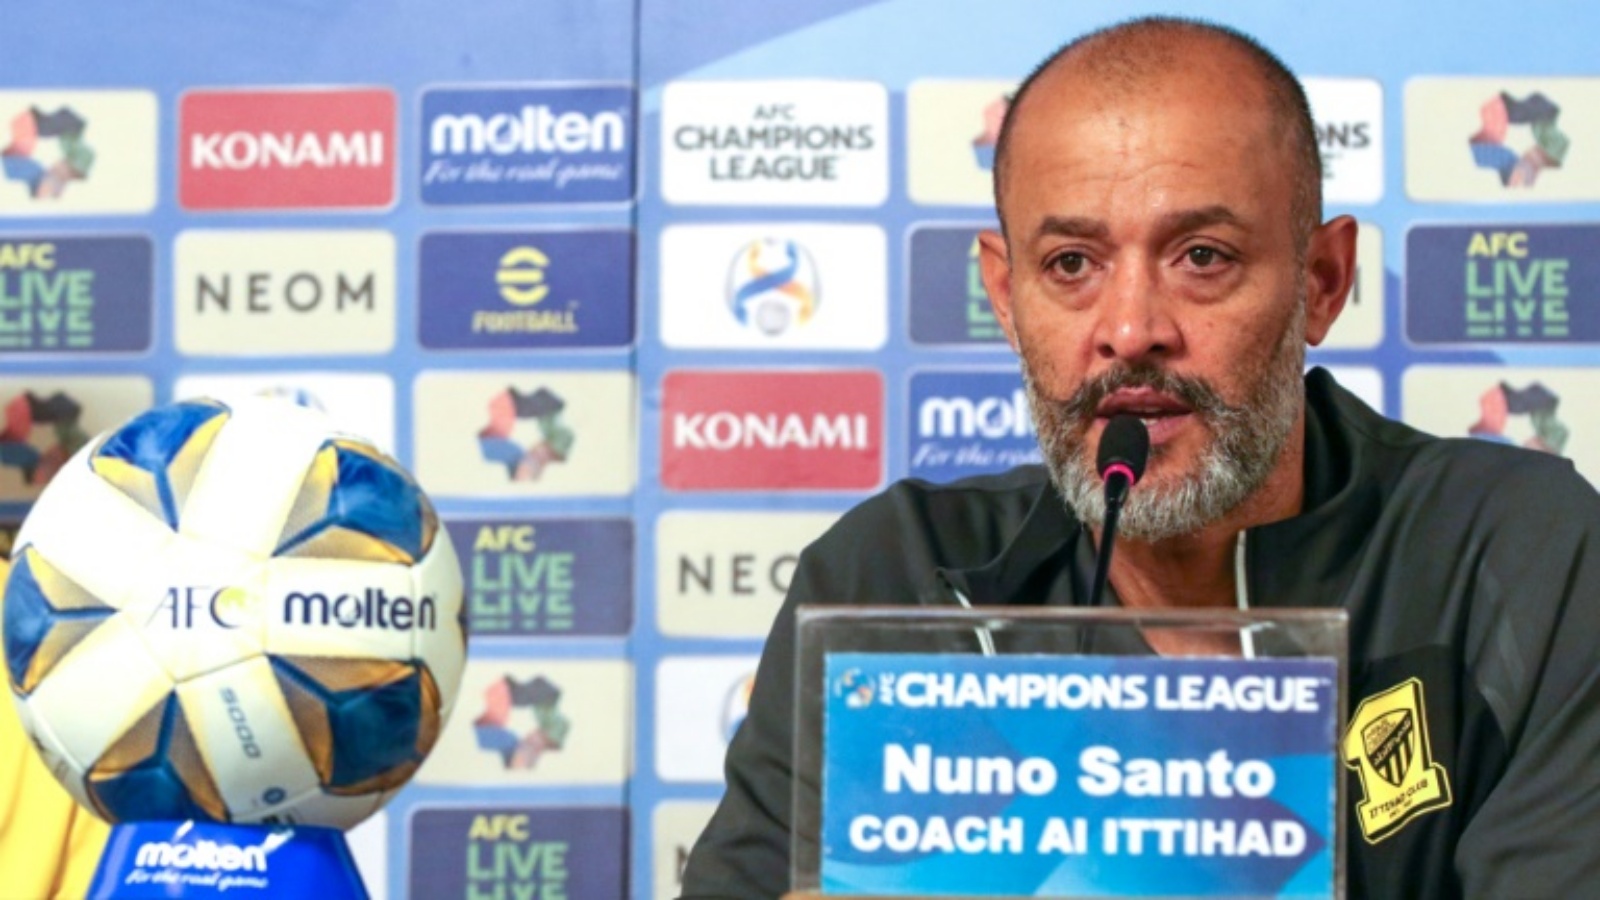 أقيل المدرب البرتغالي نونو إشبيريتو سانتو من نادي الاتحاد السعودي لكرة القدم أخيراً بعد تردّي النتائج.